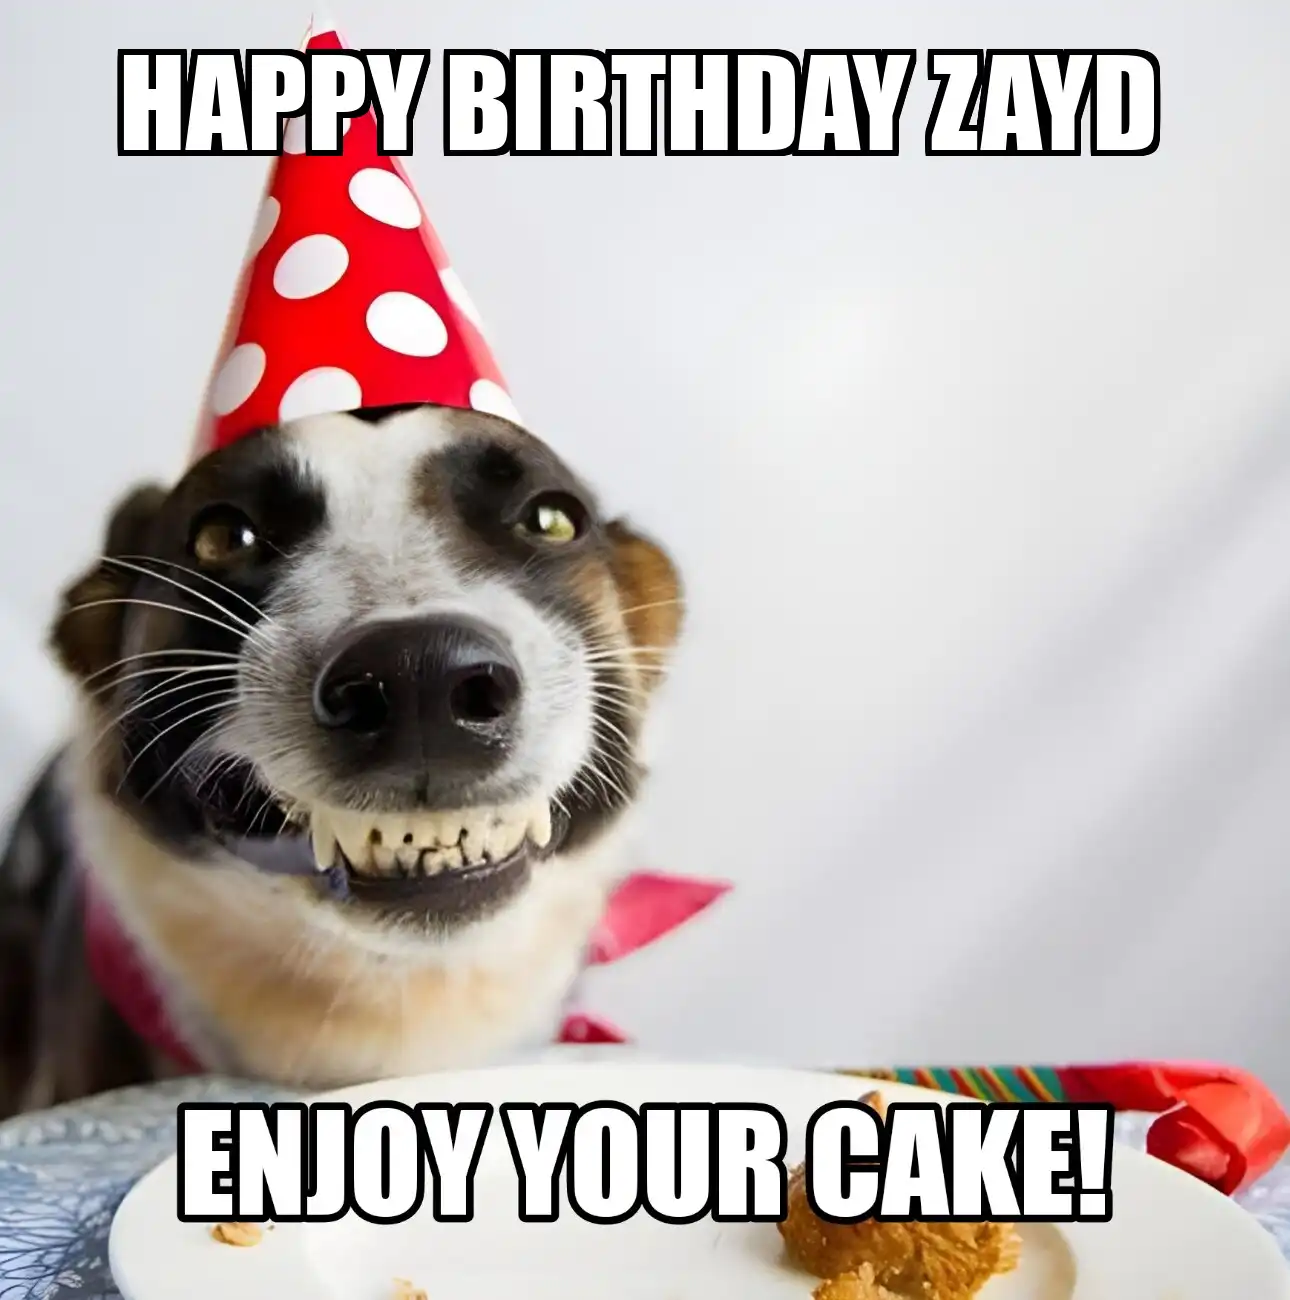 Happy Birthday Zayd Enjoy Your Cake Dog Meme